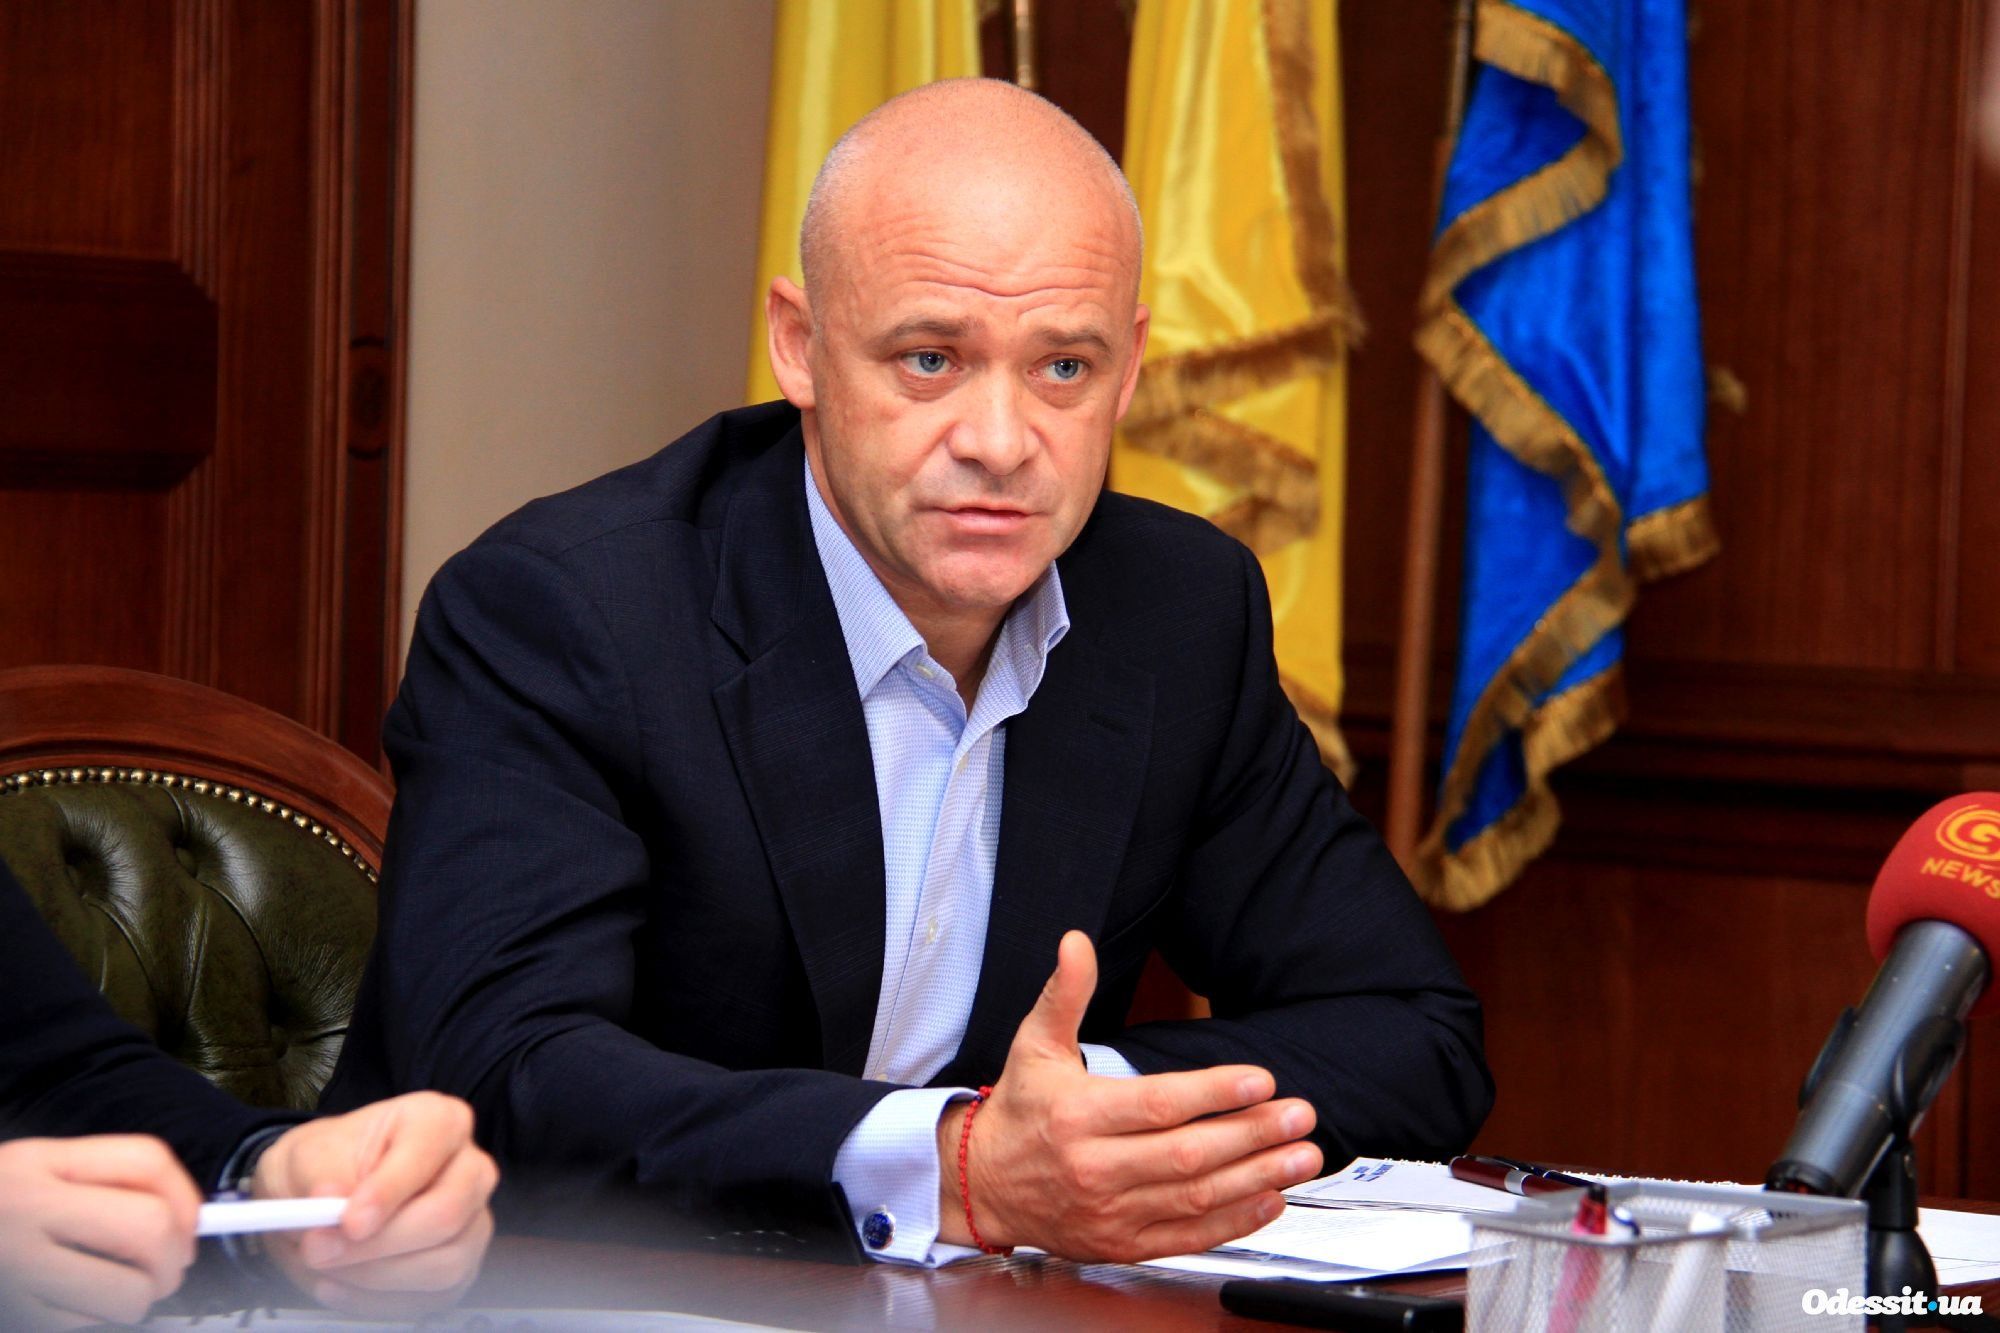 САП скерувала до суду обвинувальний акт стосовно міського голови Одеси Труханова